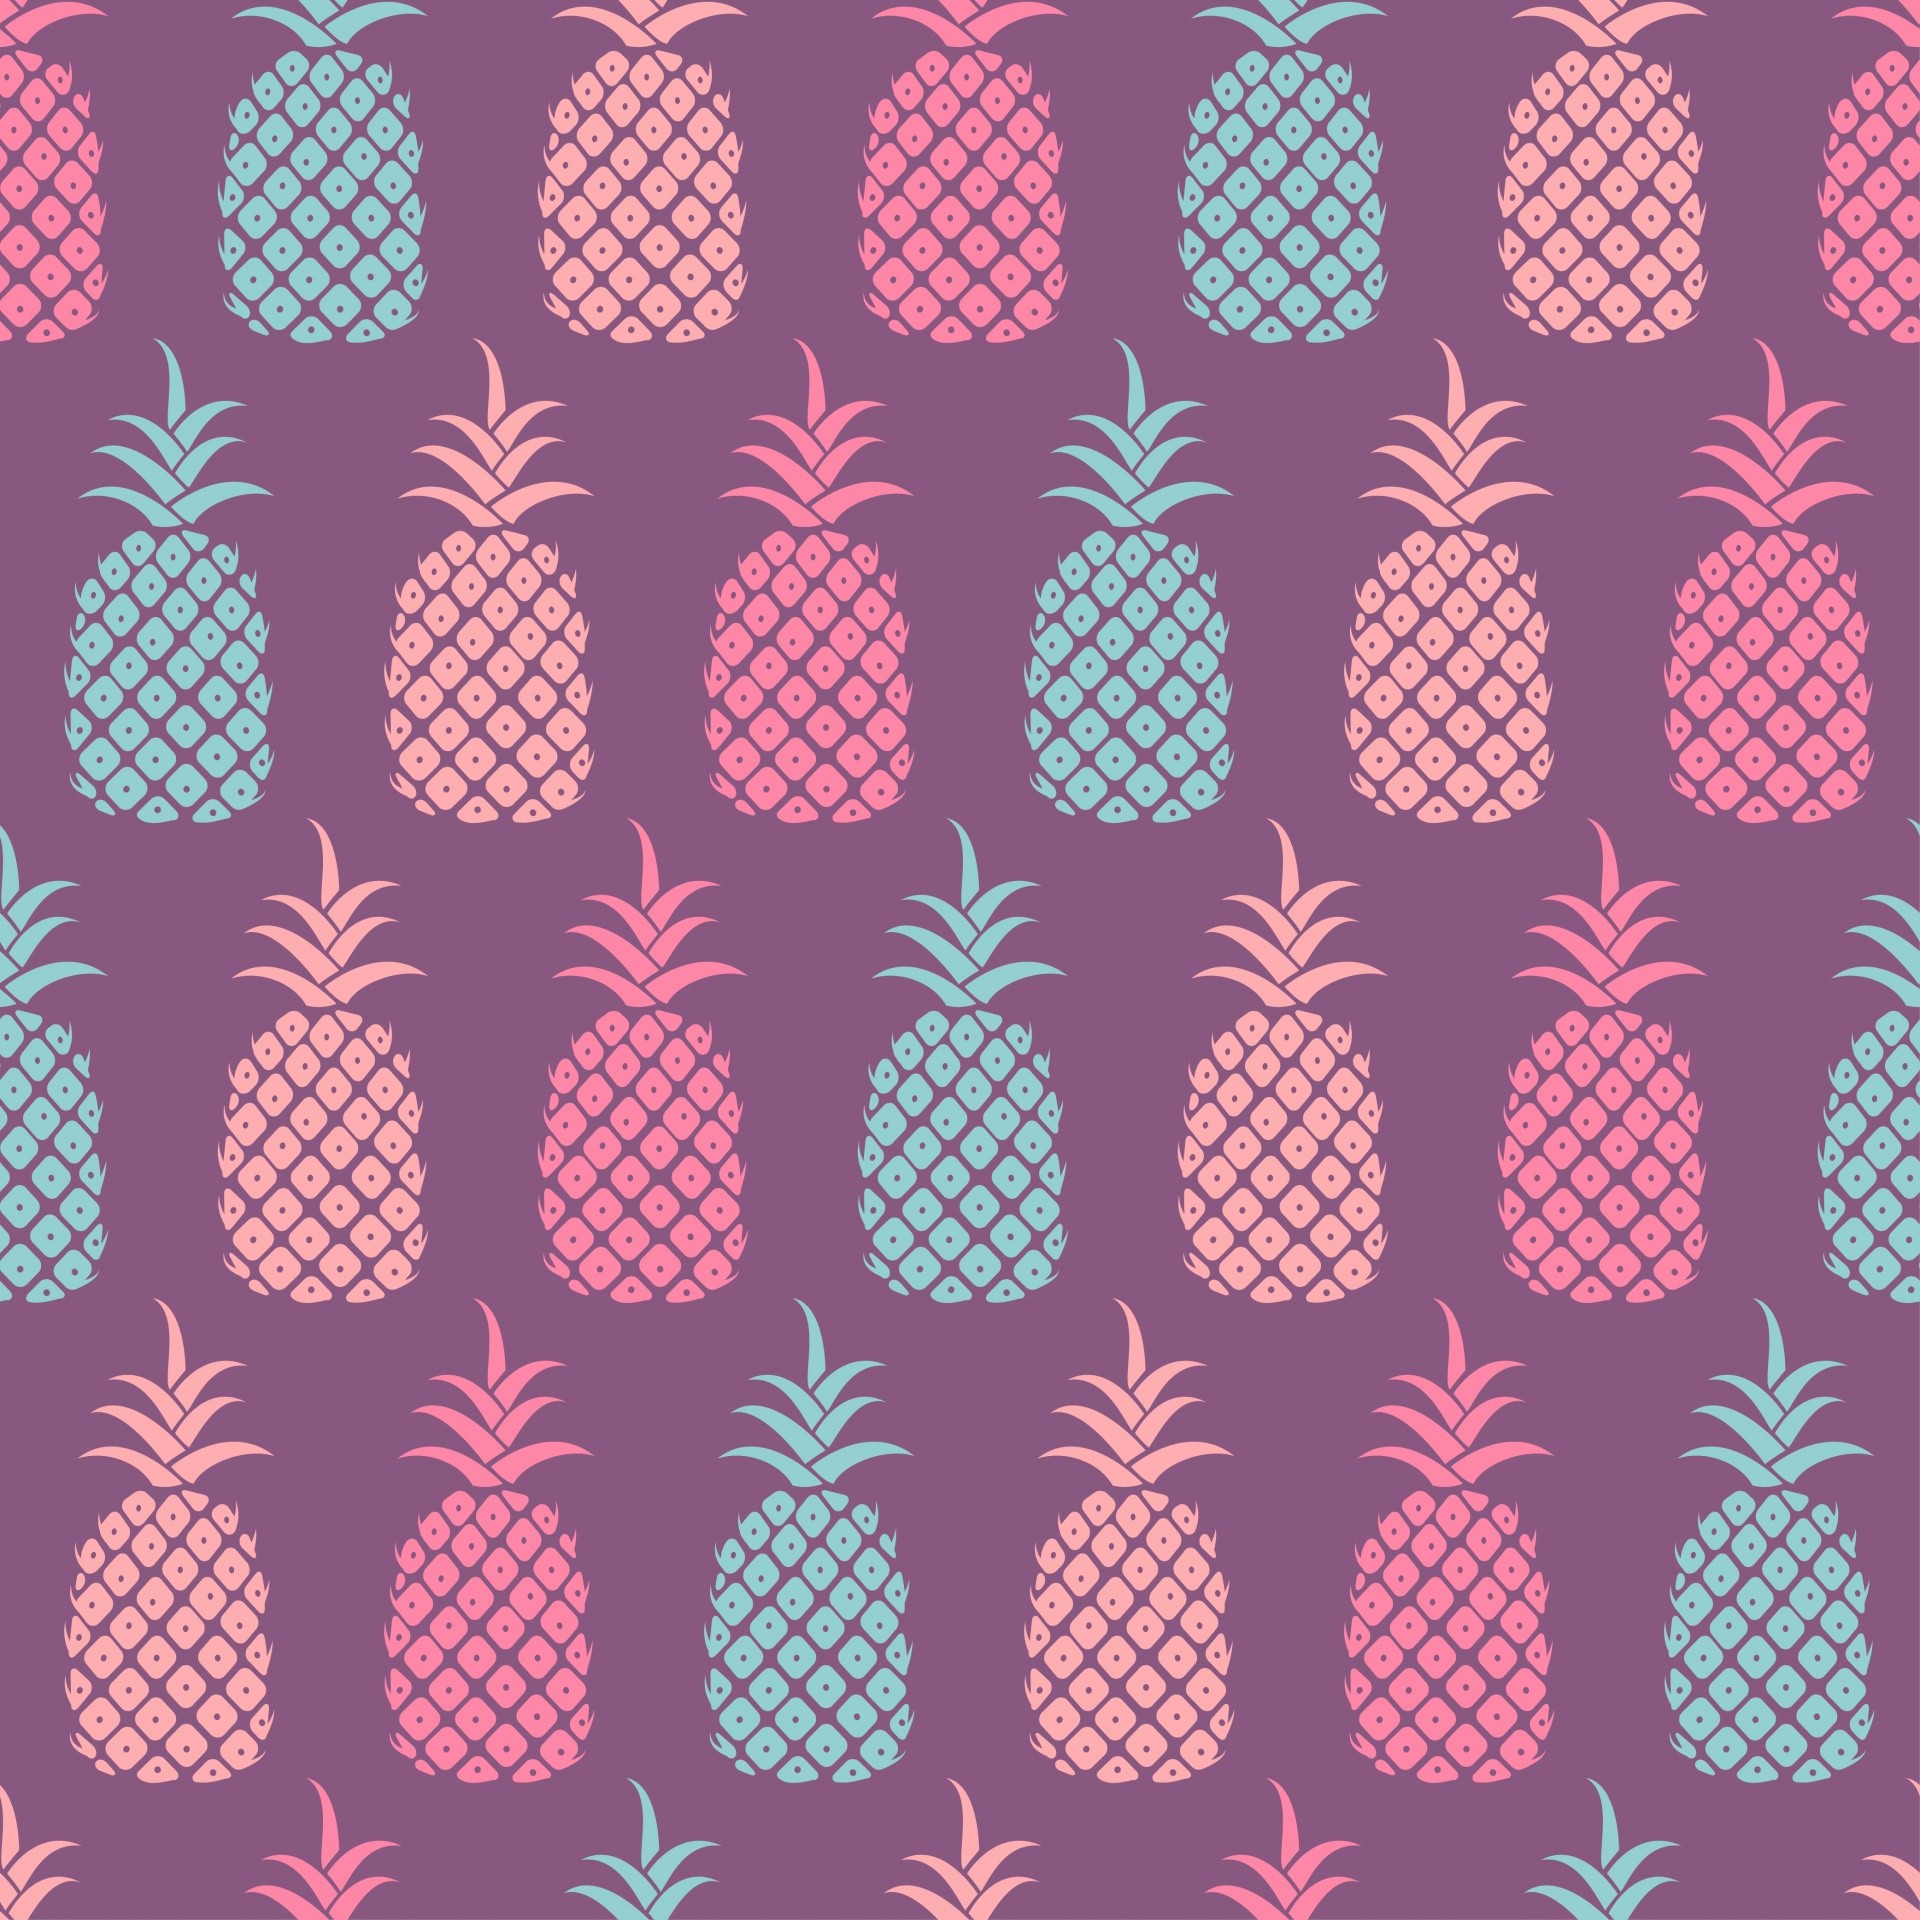 1920x1920 ... Purple Pineapple Wallpaper Pattern ...